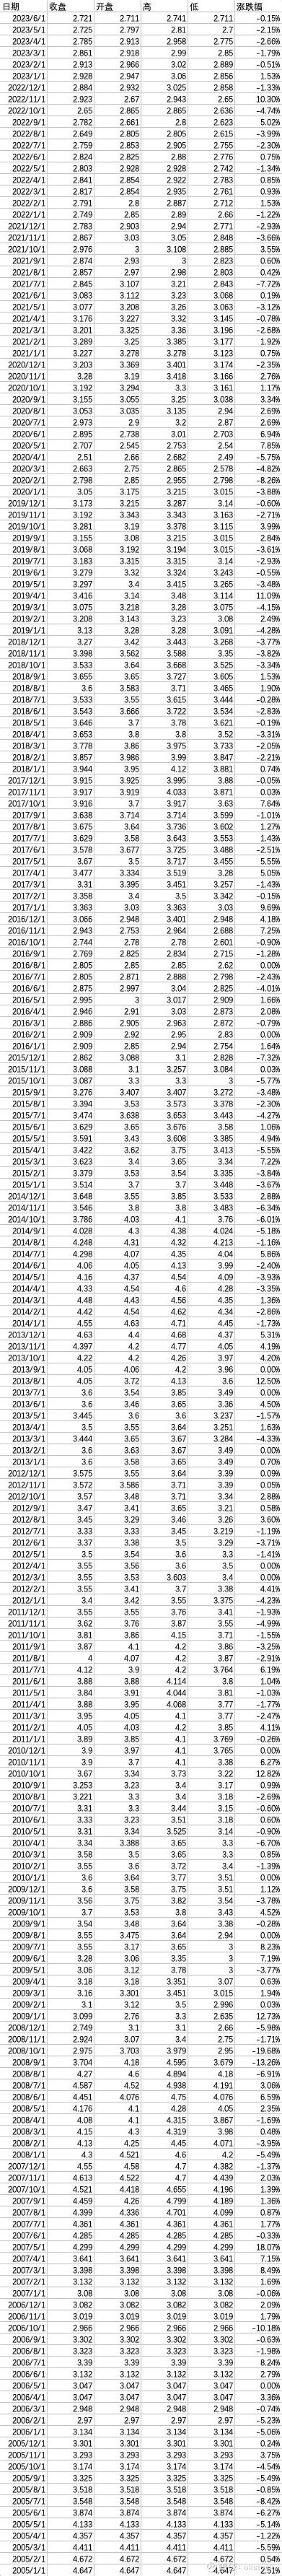 中国十年期国债收益率历史数据（2005-2023）月度数据 十年期国债利率长期来看是大于3%的，贴现率用多少合适可以参考一下十年期国债收益率 ...